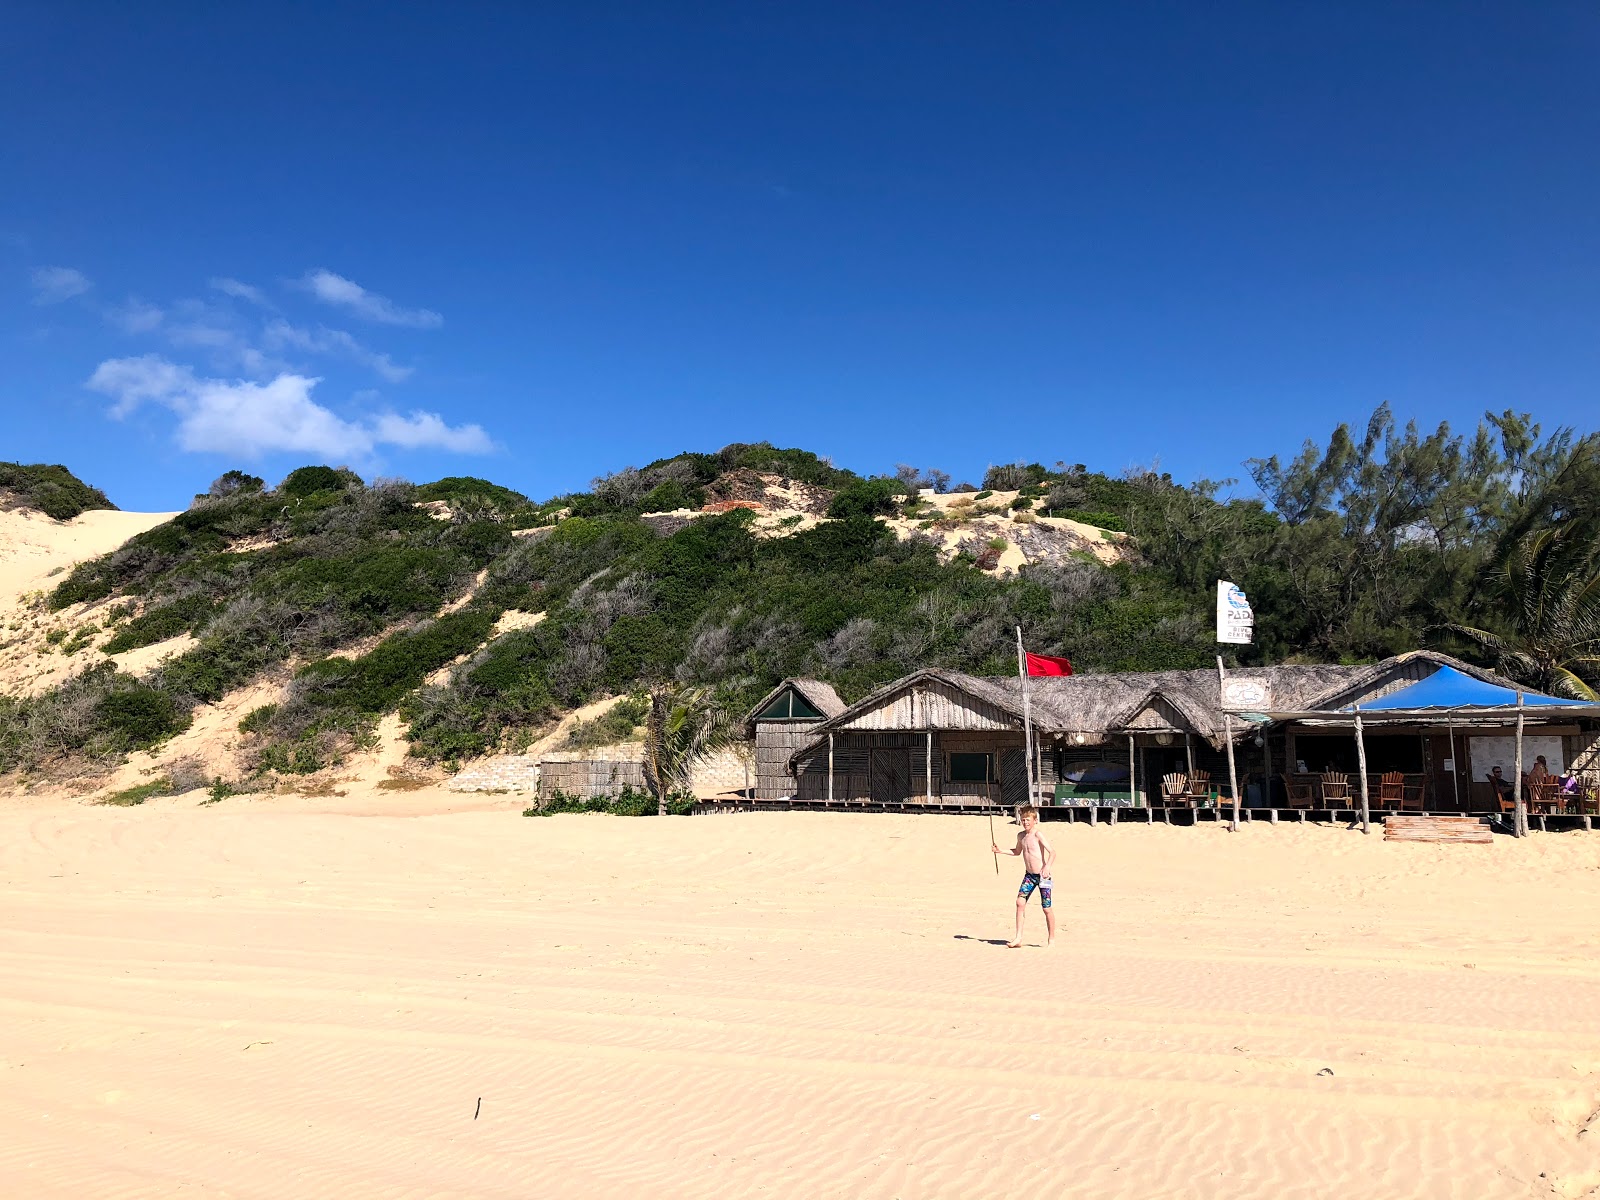 Praia de Jangamo'in fotoğrafı - rahatlamayı sevenler arasında popüler bir yer